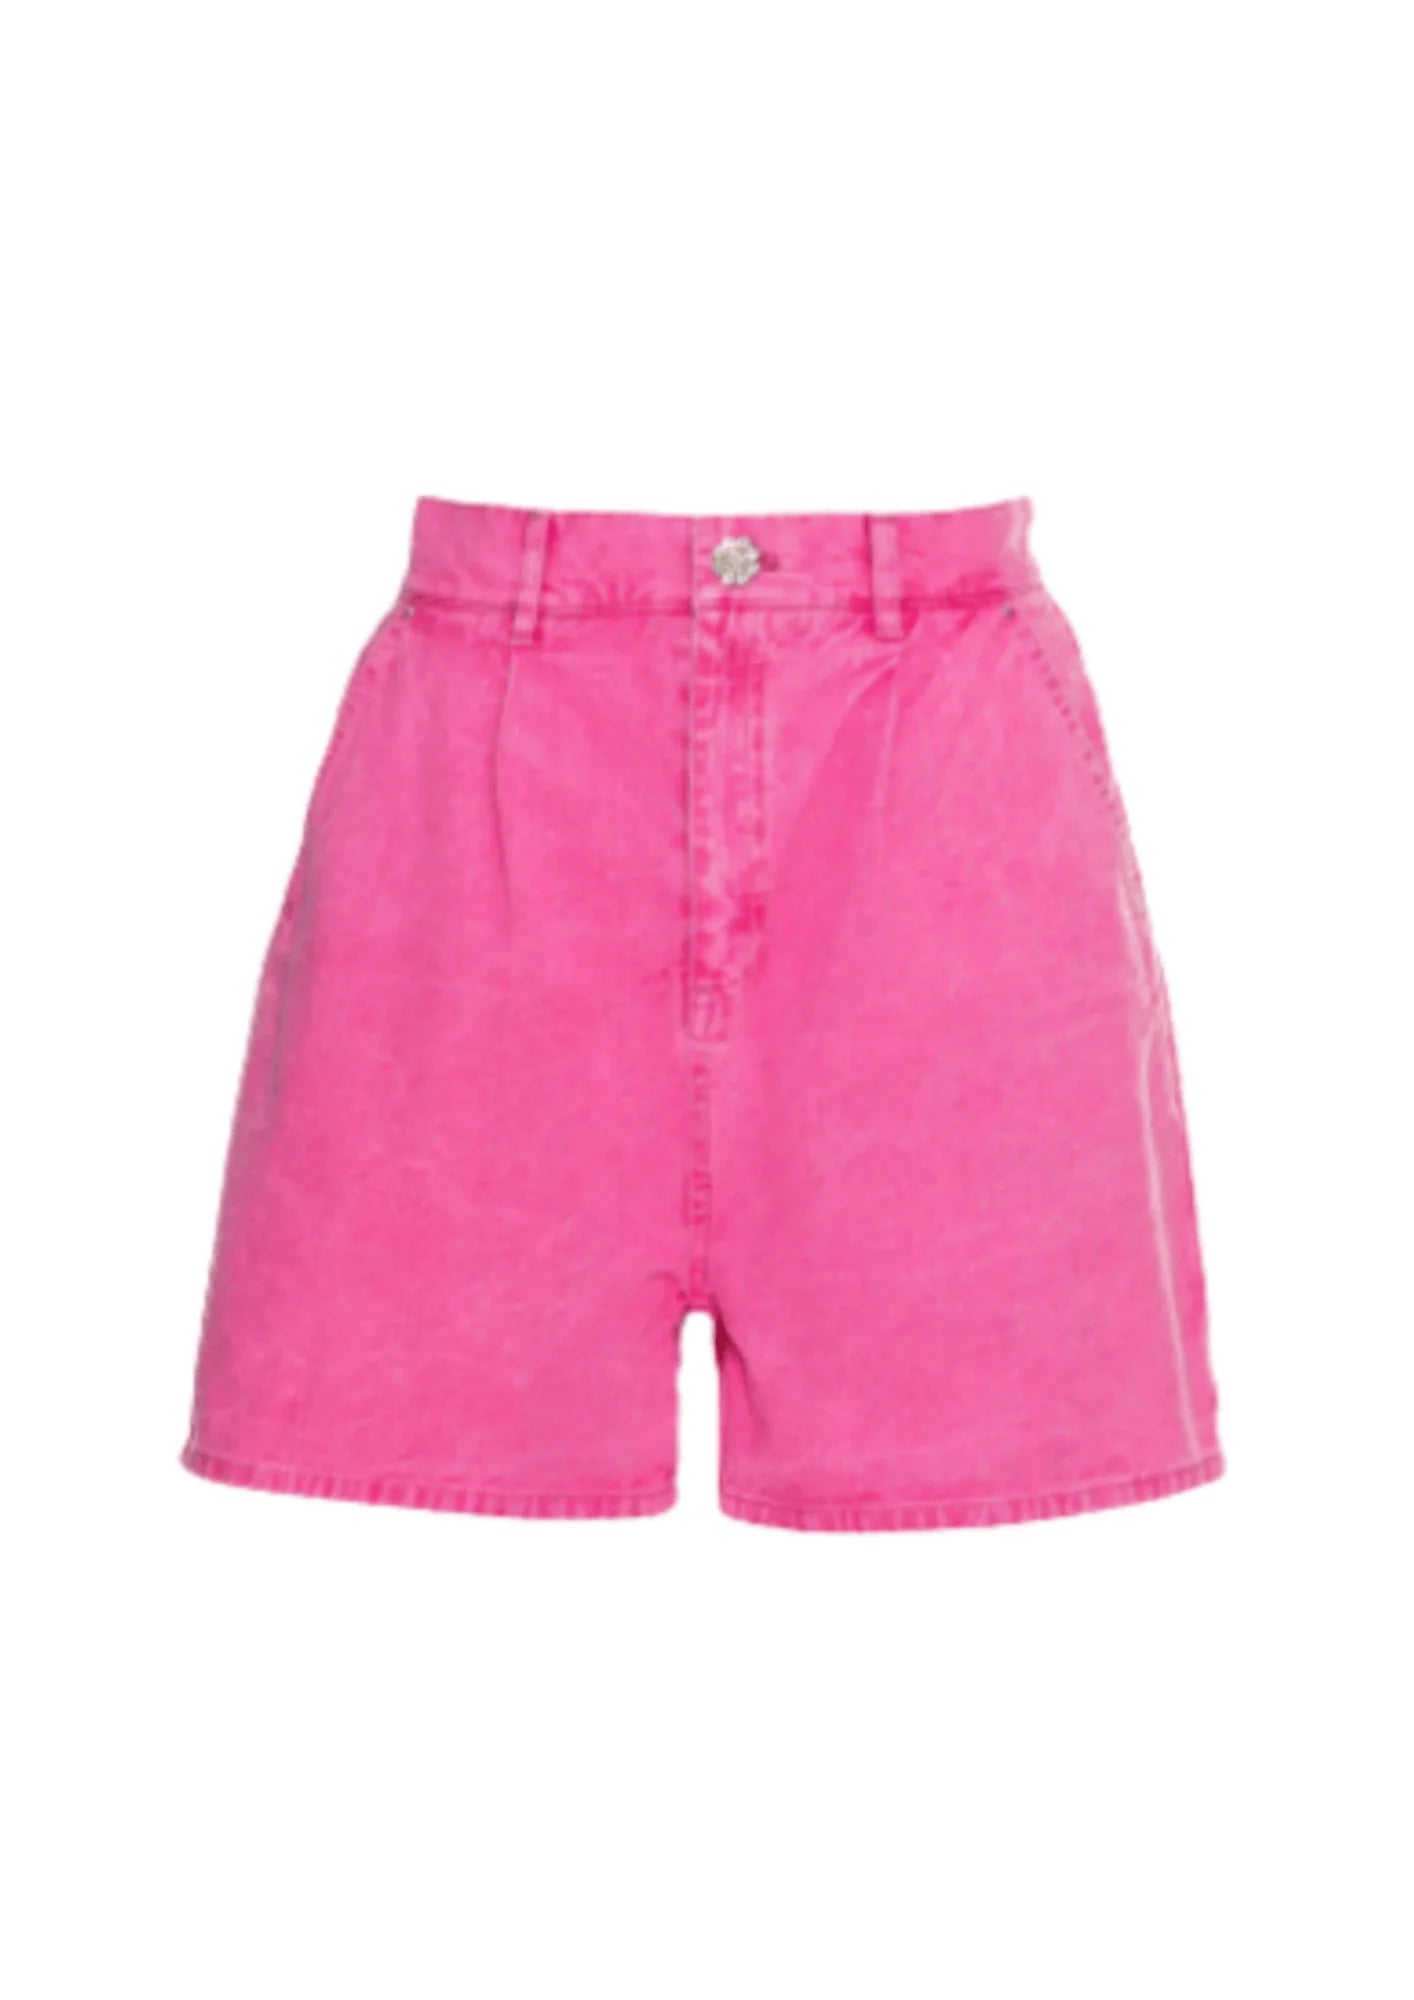 Pink Nola Jean Shorts